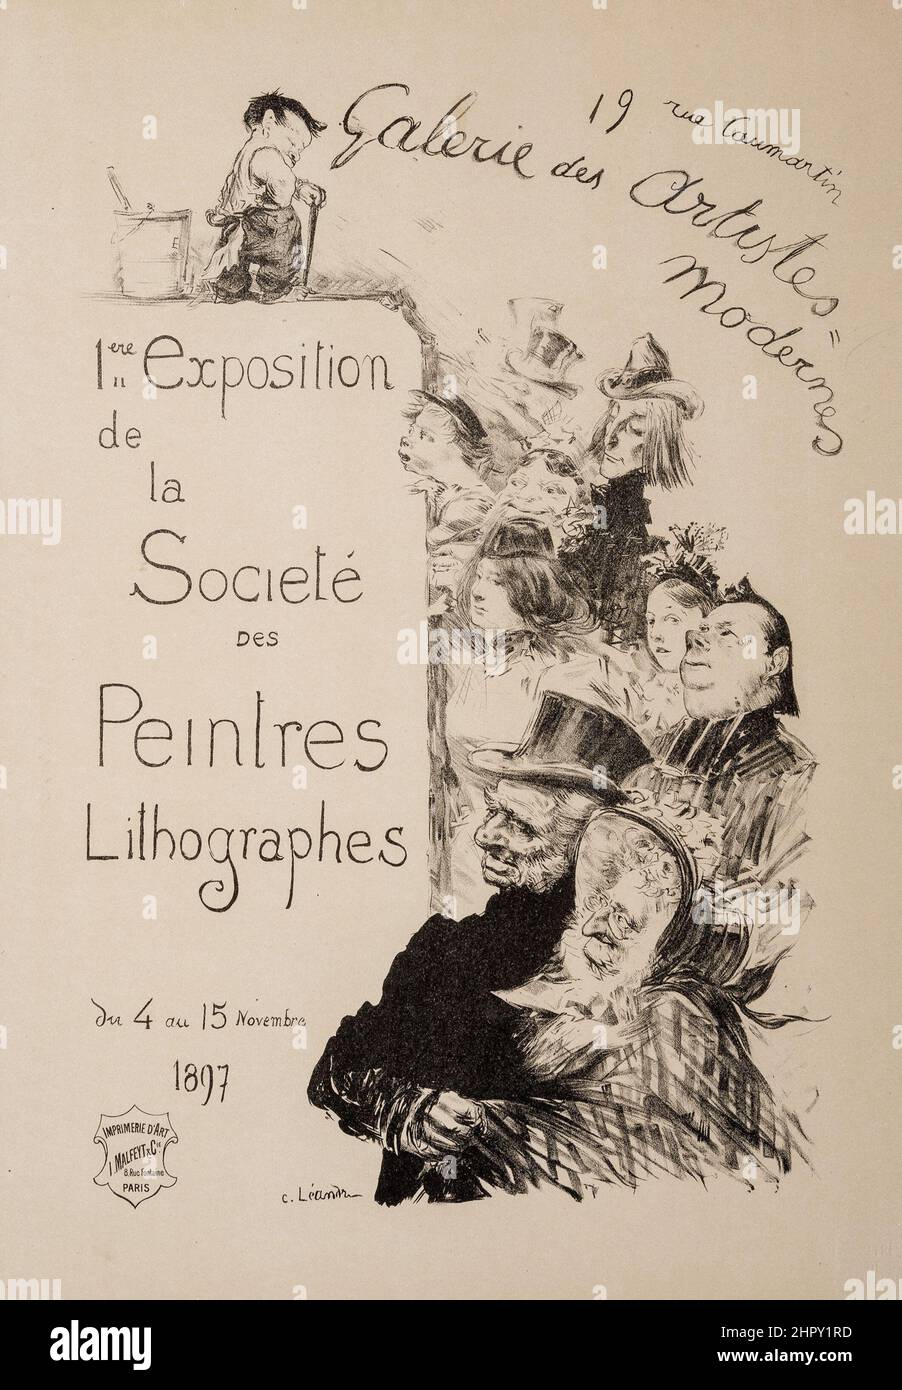 Exposition de la Societe des Peintres Lithographes (from Les Maitres de L'Affiche), plate 206, c 1900. Drawing, France. Stock Photo